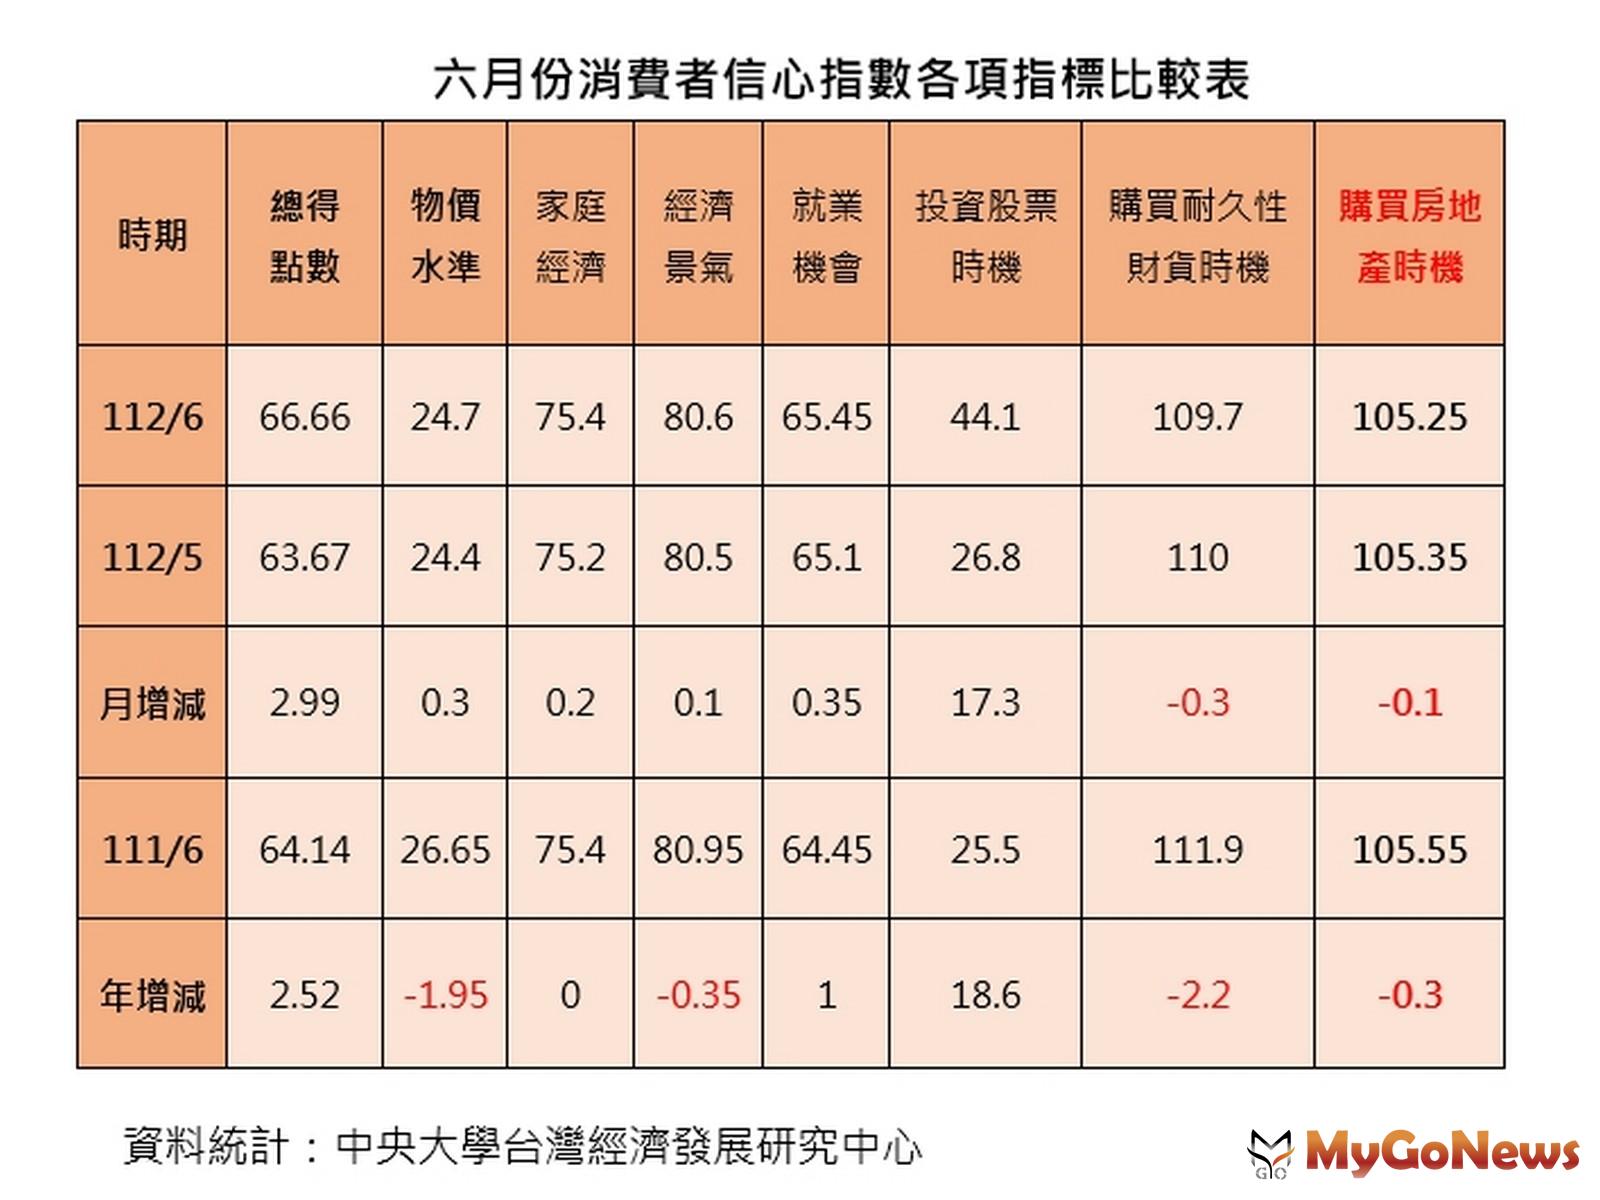 六月份消費者信心指數各項指標比較表(台灣房屋提供) MyGoNews房地產新聞 市場快訊